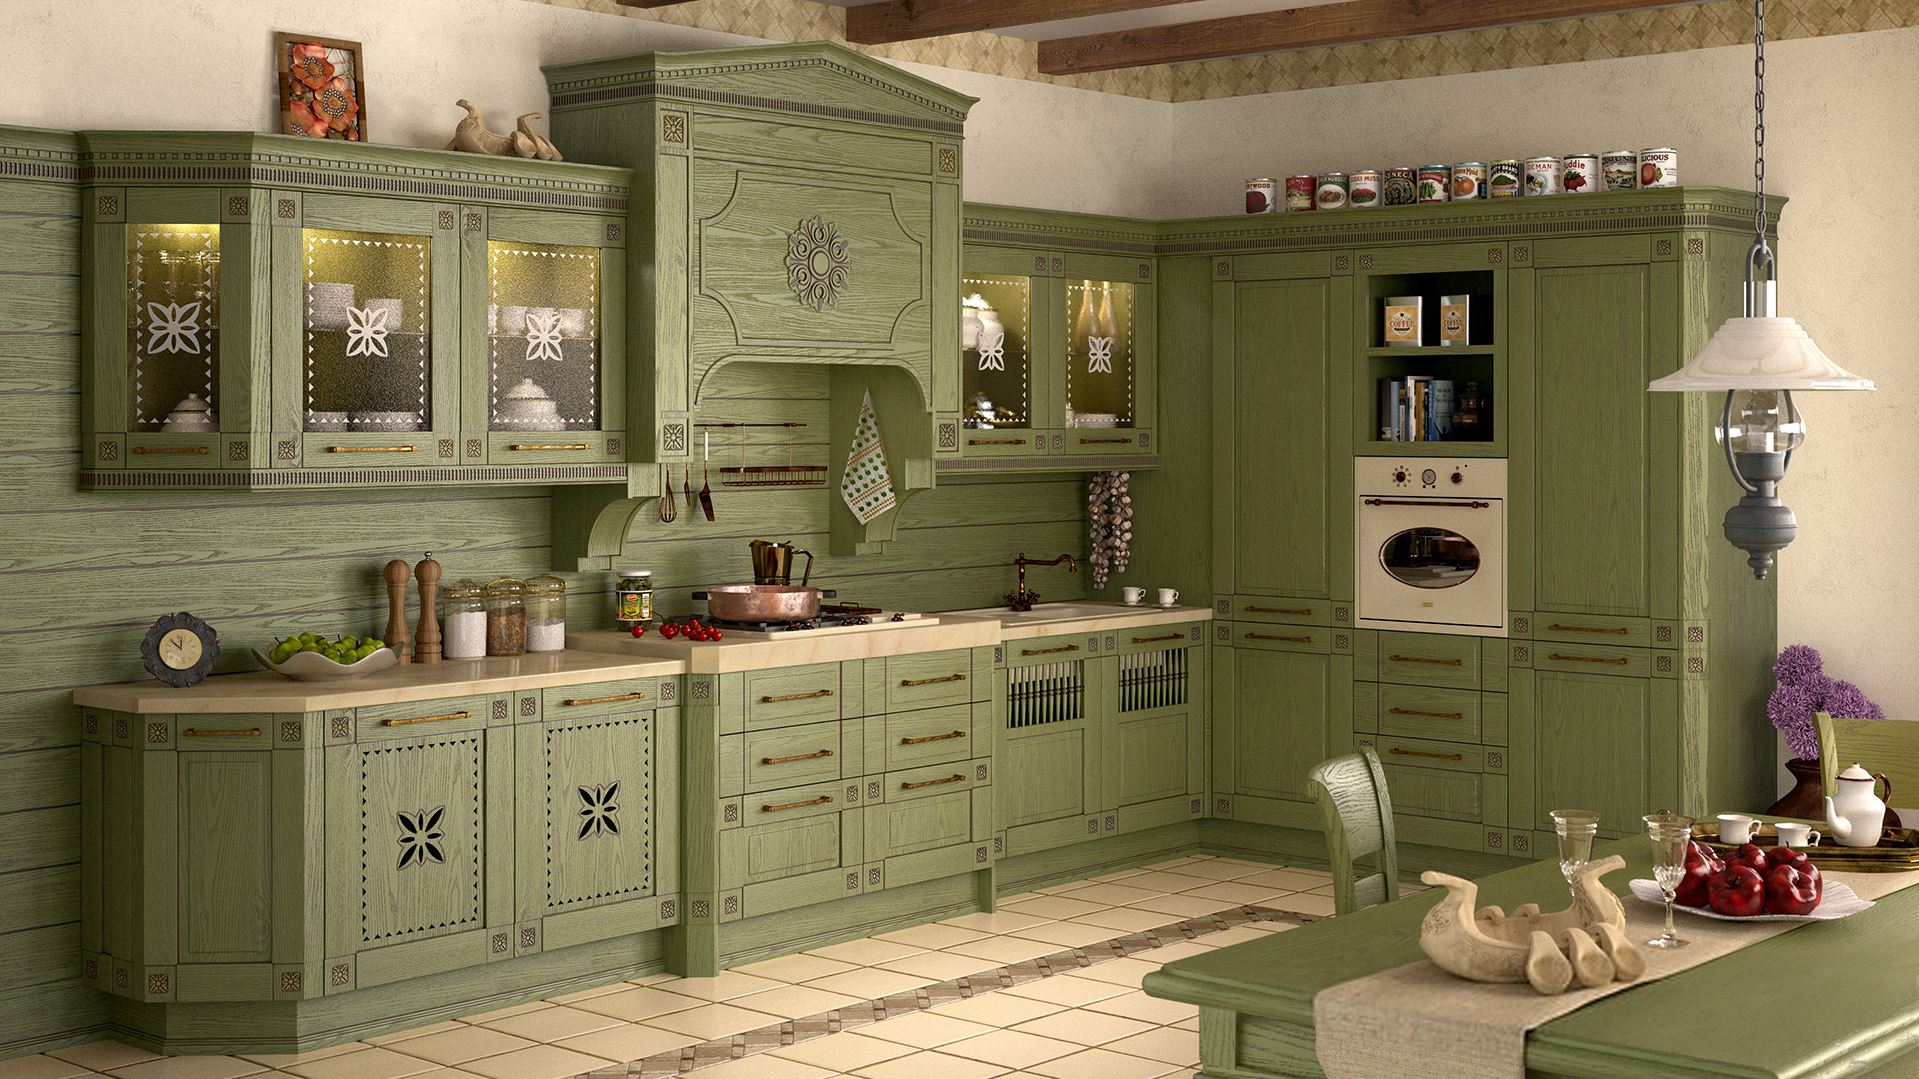 Кухня мебель зеленого цвета